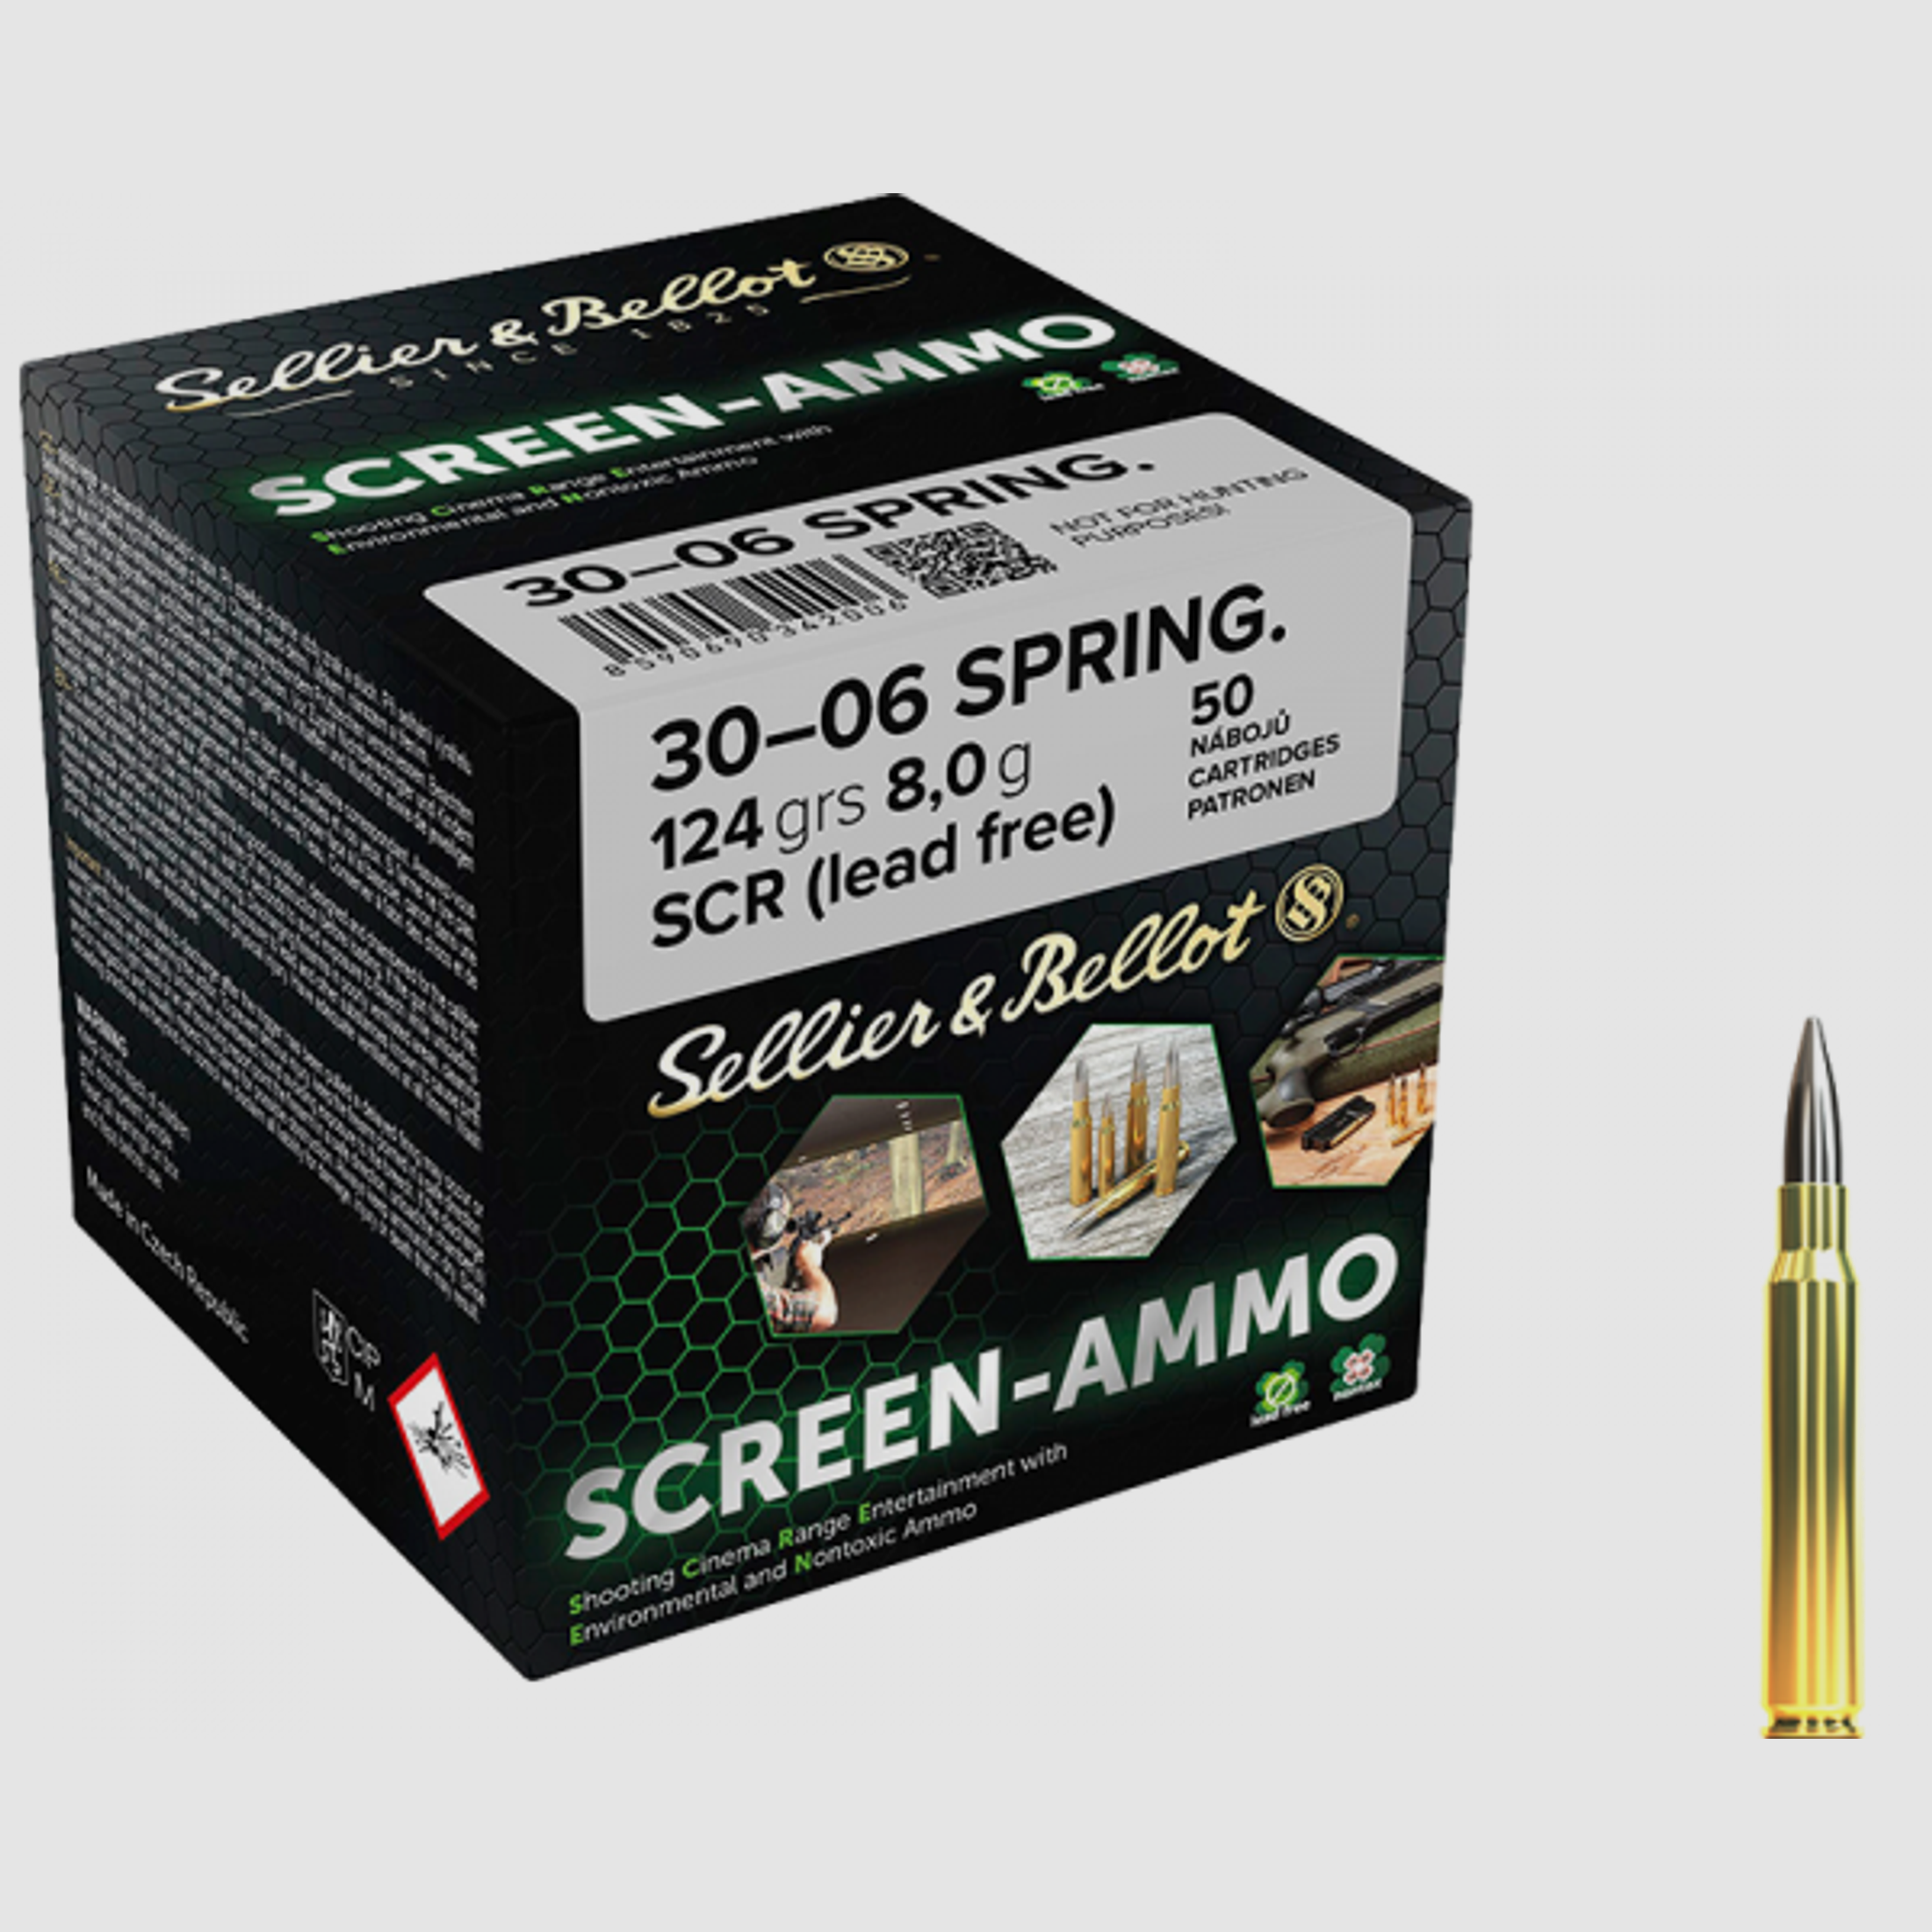 Sellier & Bellot Screen-Ammo .30-06 Springfield 124 grs Büchsenpatronen